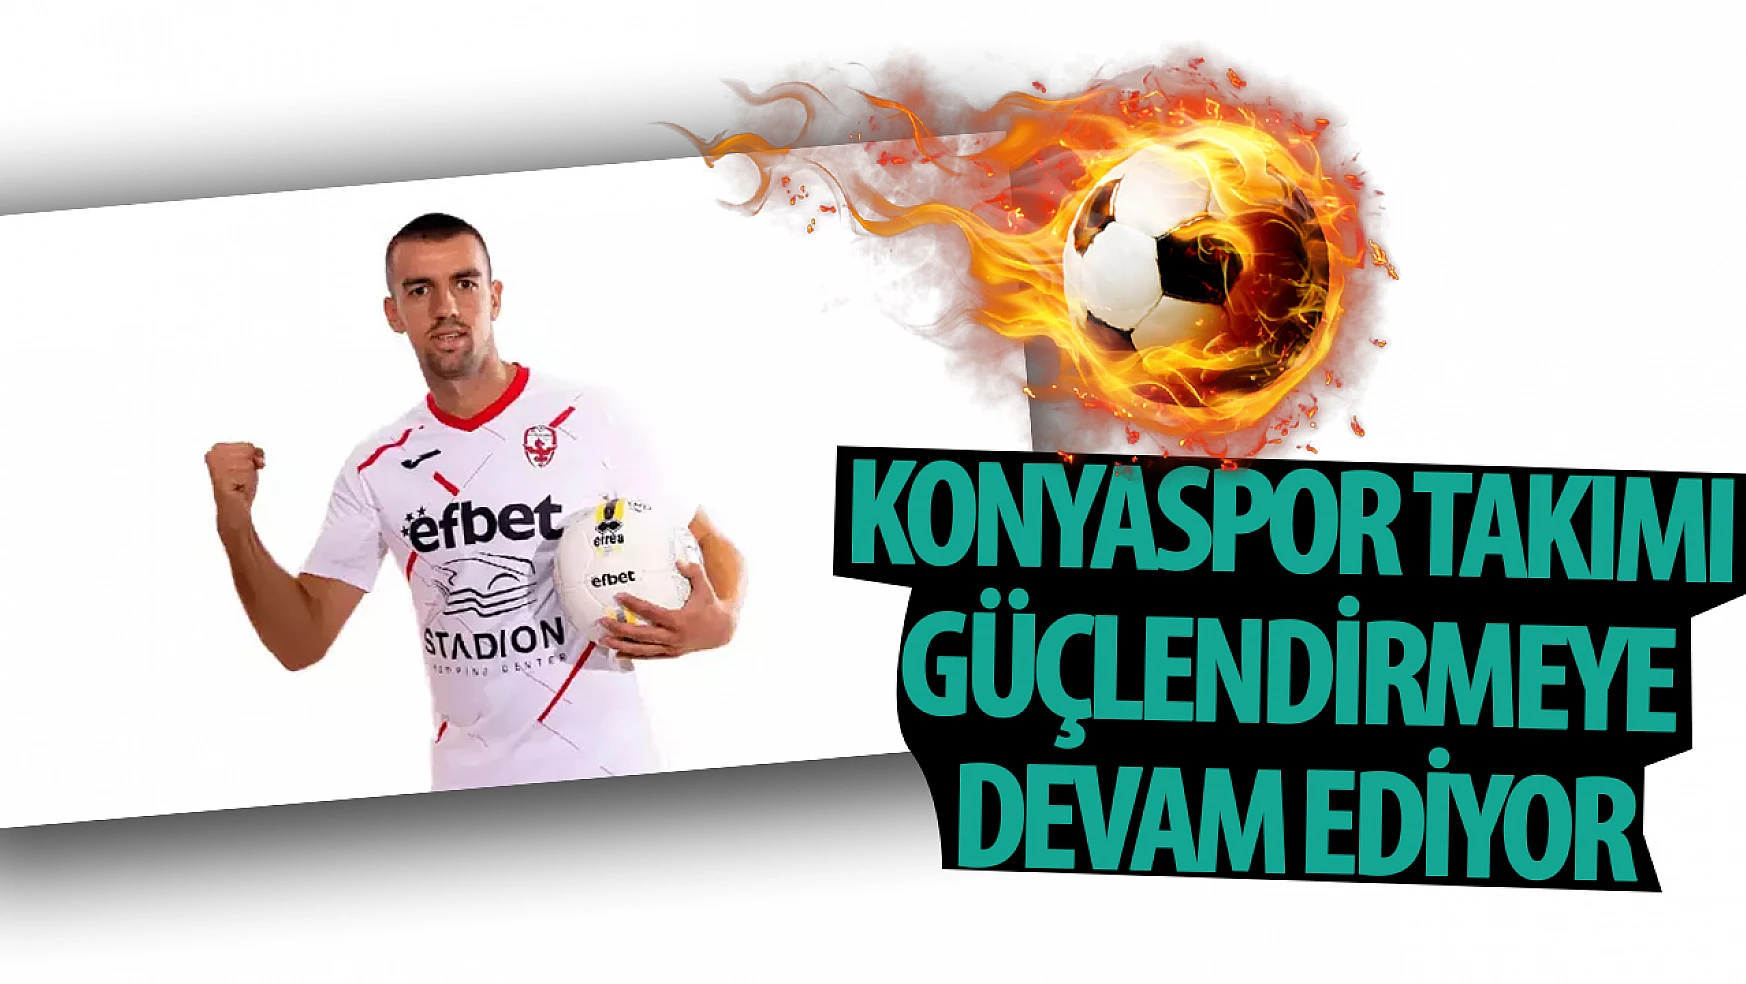 Konyaspor takımı güçlendirmeye devam ediyor: Yeni transferde anlaşma tamam!